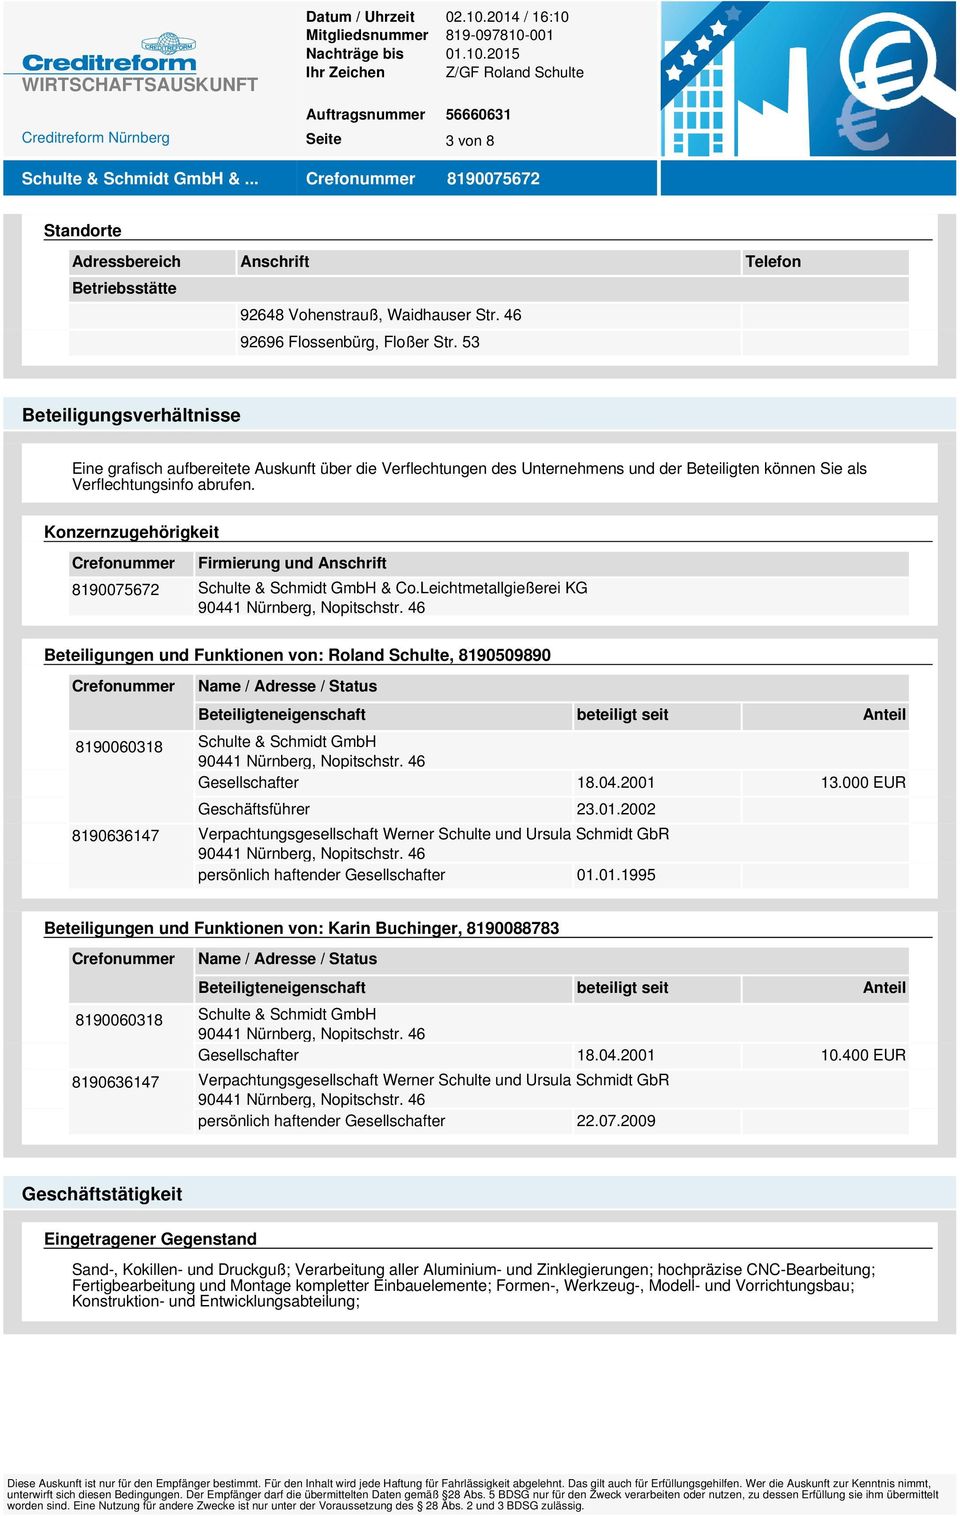 Konzernzugehörigkeit Crefonummer Firmierung und Anschrift 8190075672 Schulte & Schmidt GmbH & Co.